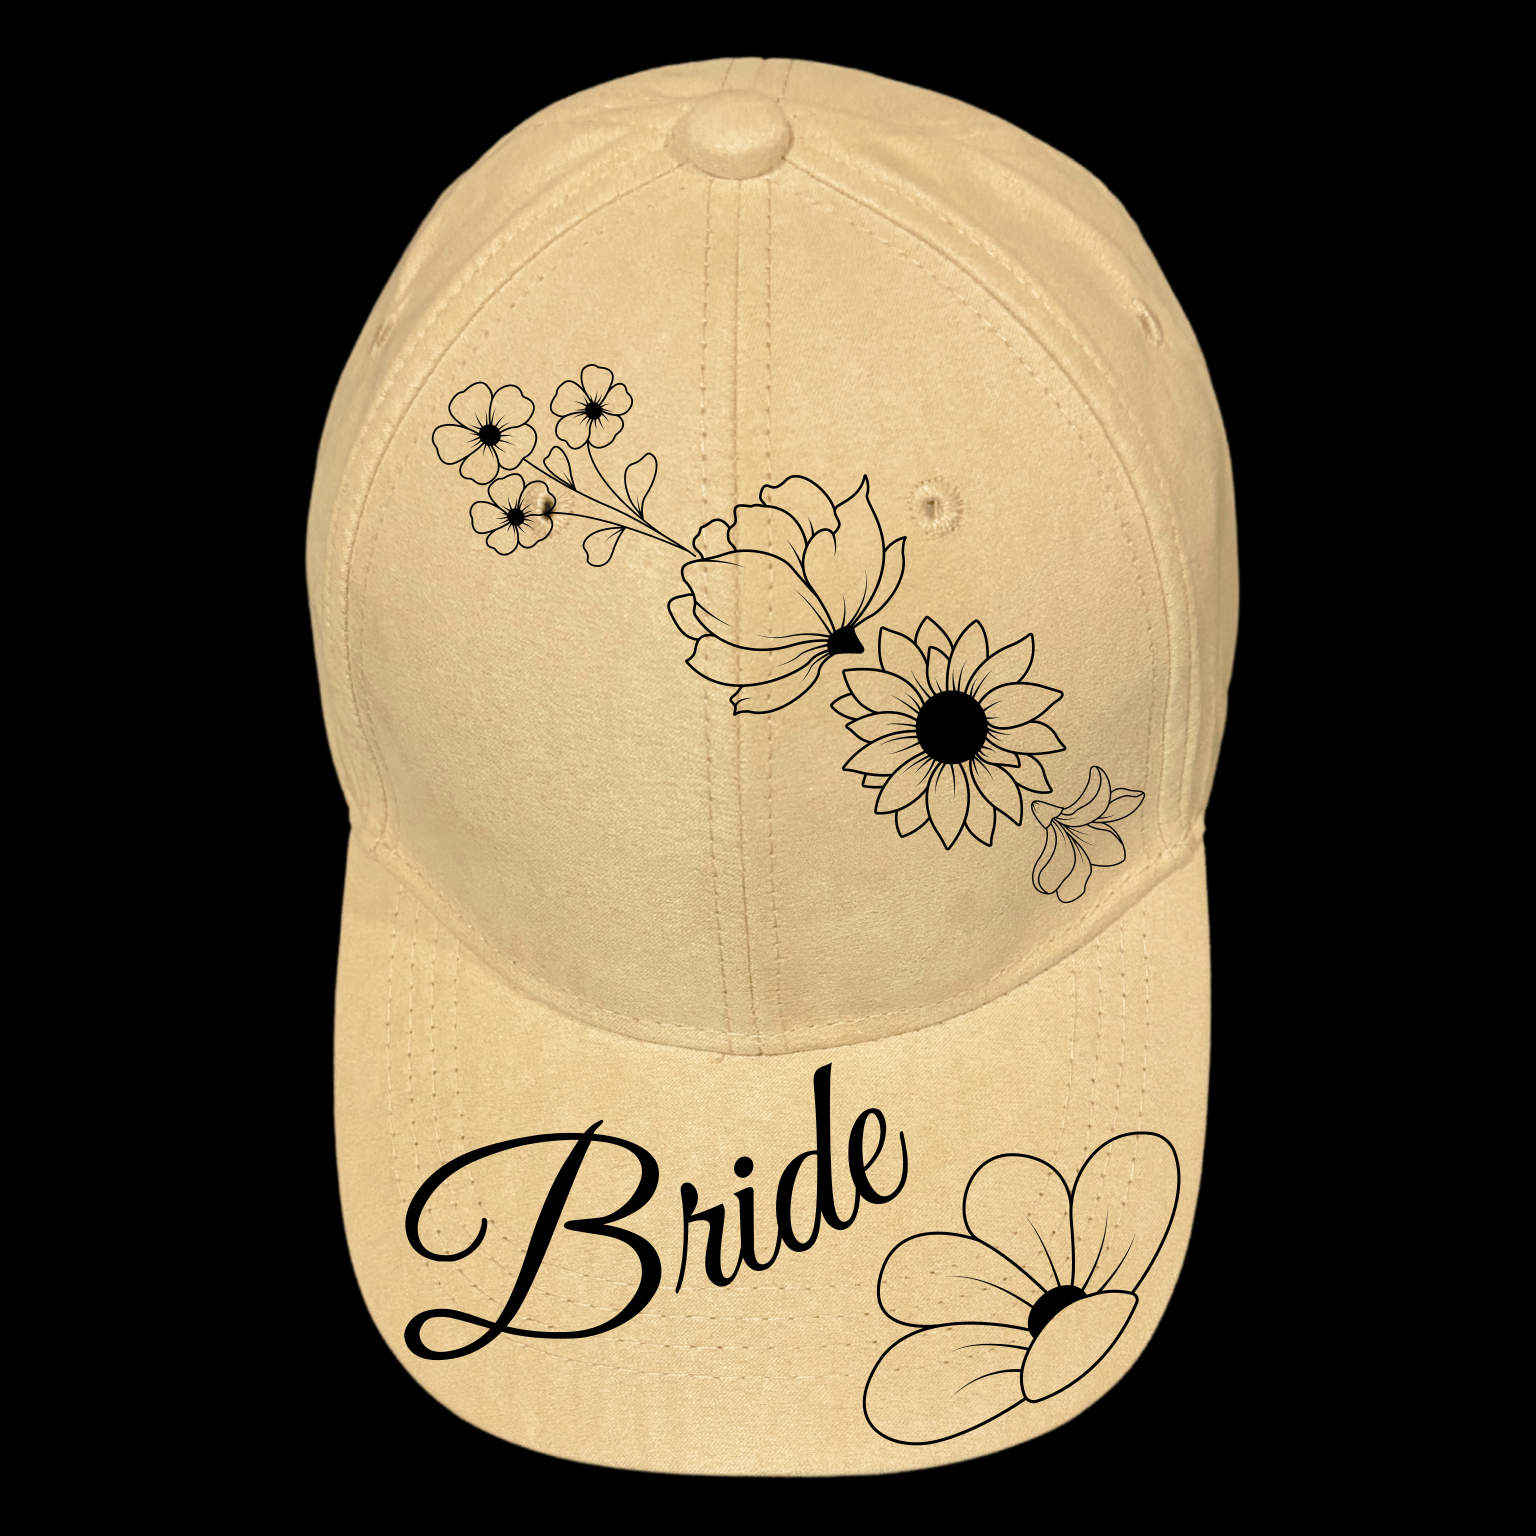 Bride design on a baseball cap